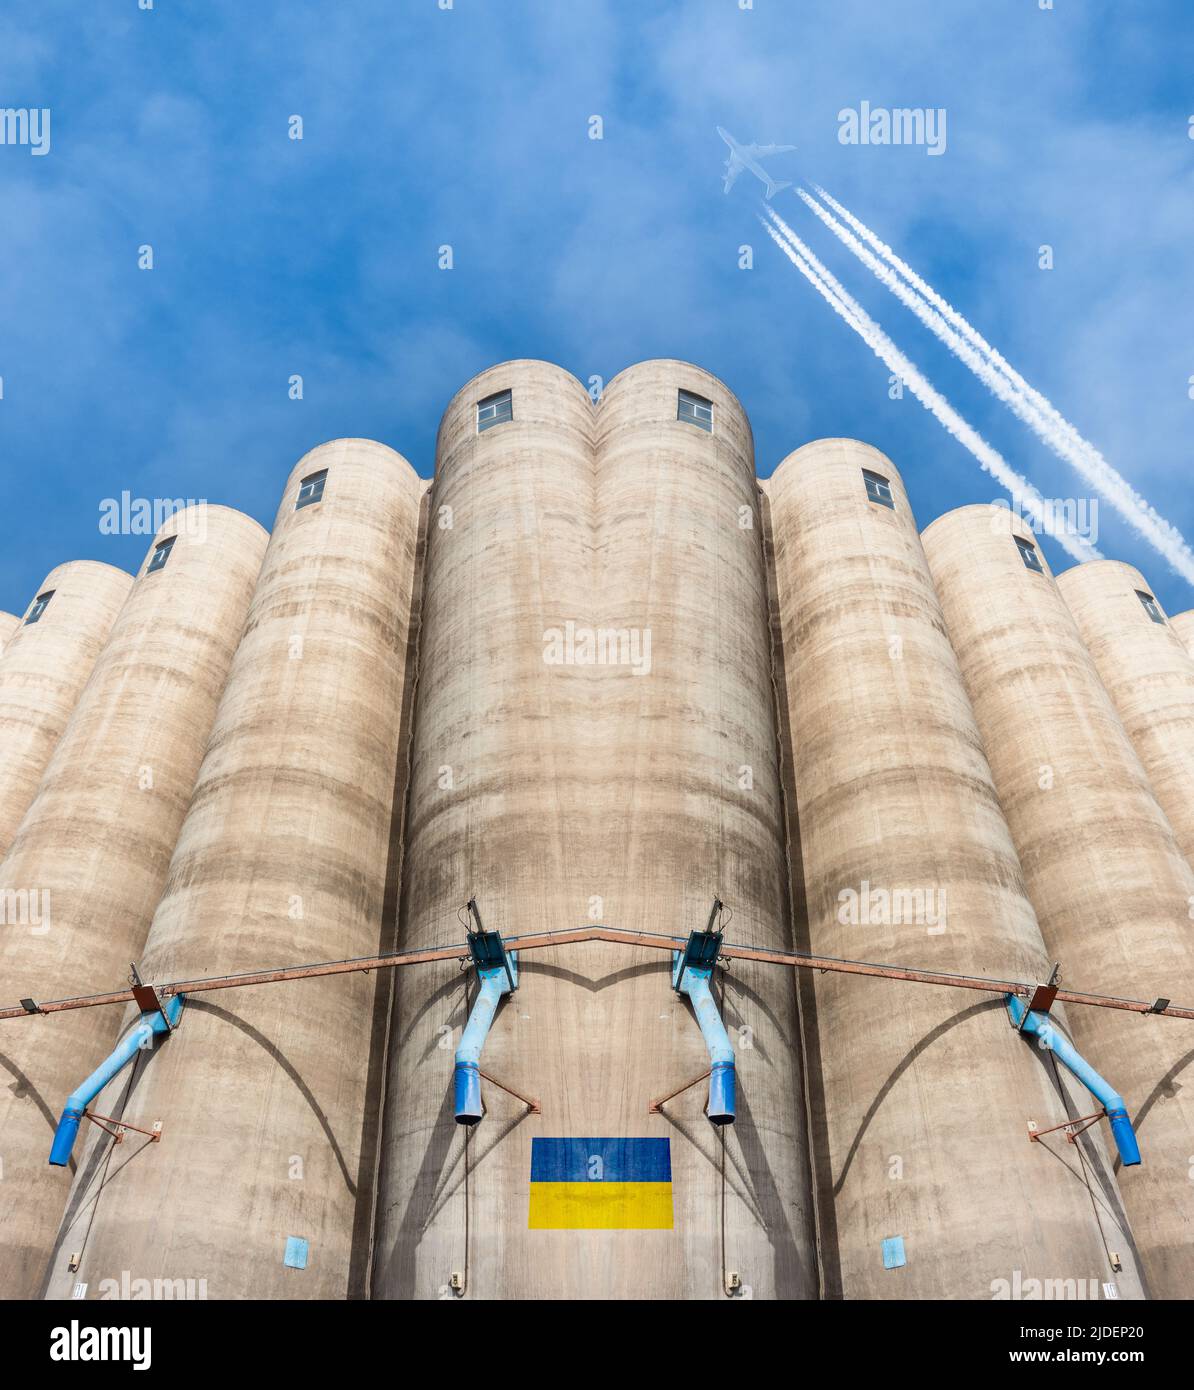 Silos à grains avec drapeau de l'Ukraine, avion volant au-dessus. Russie guerre de conflit, blé, pénurie alimentaire, prix... concept image composite Banque D'Images